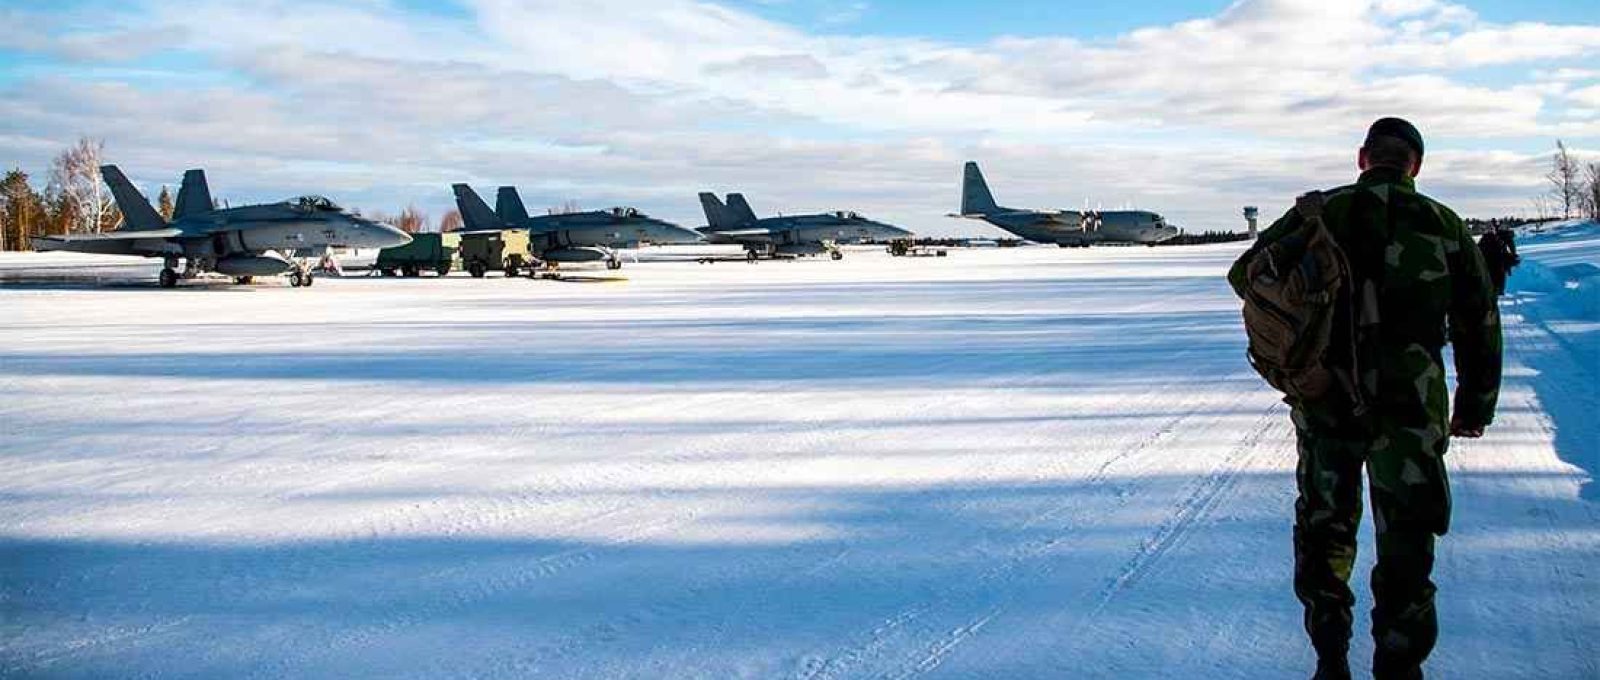 Caças F-18 Hornet finlandeses em Rovaniemi durante exercício conjunto entre as forças aéreas finlandesas e suecas no Círculo Polar Ártico em 2019 (Jonathan Nackstrand/AFP/Getty Images).